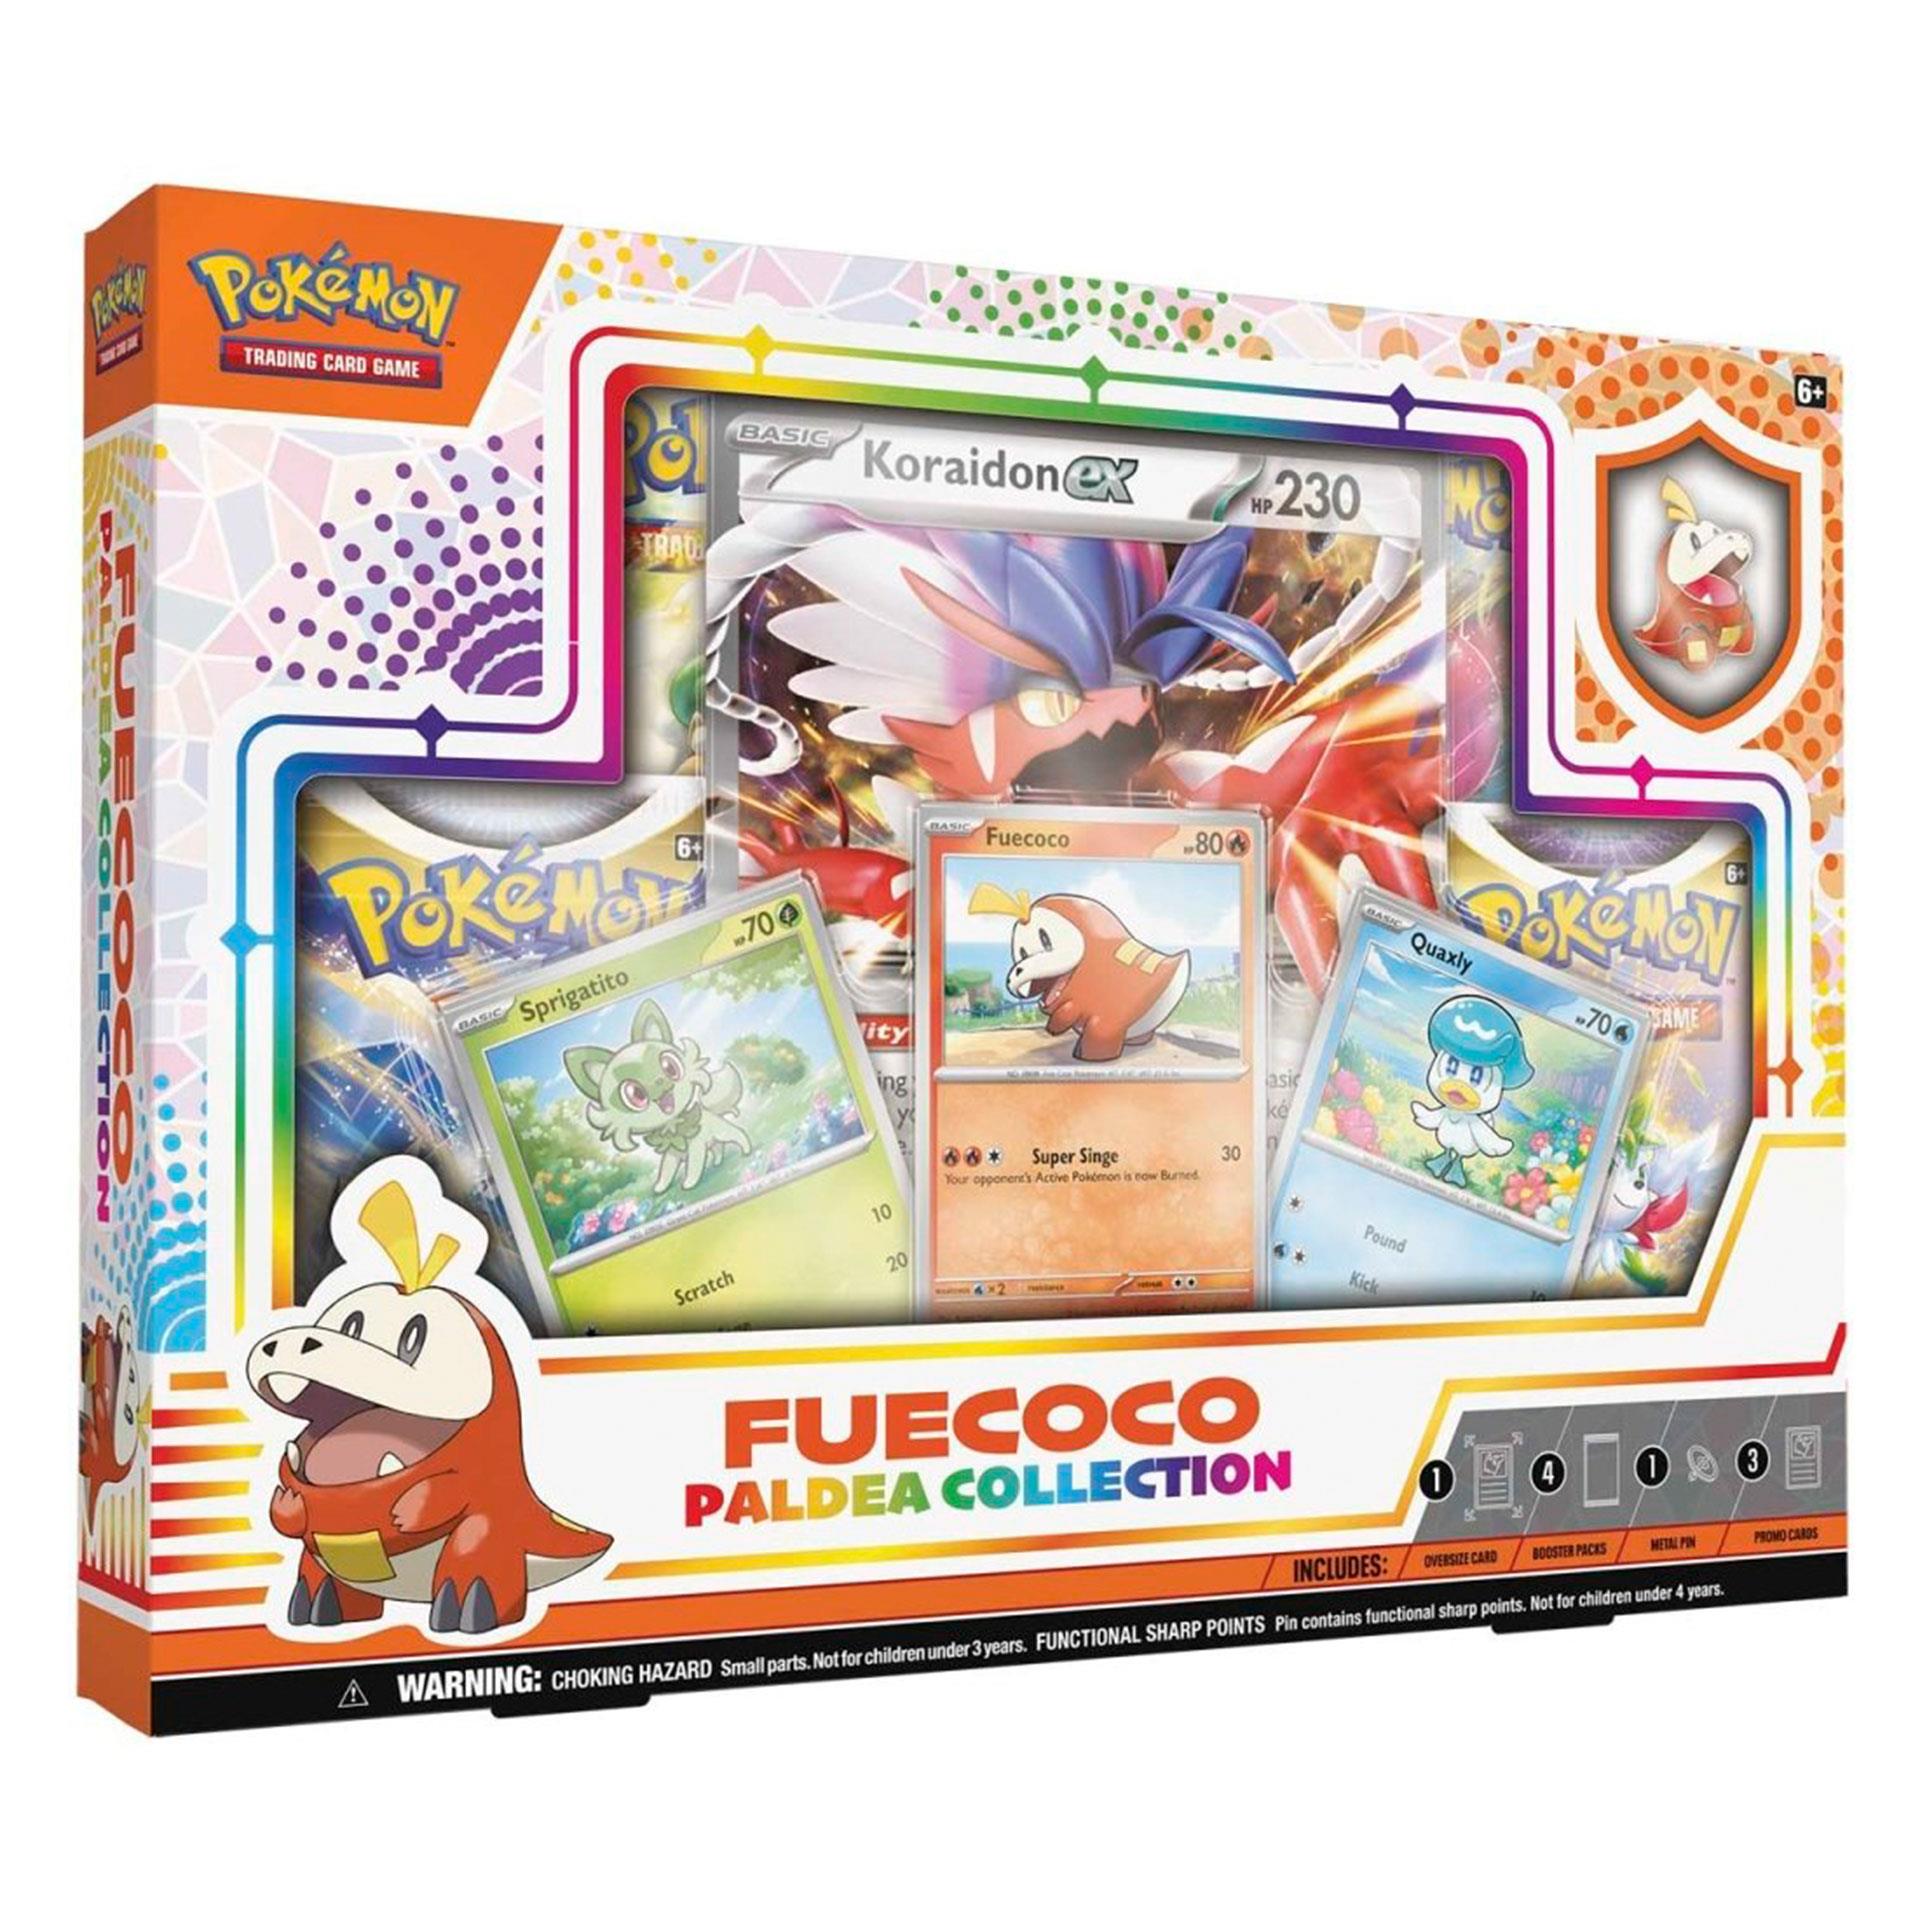 Pokémon Fuecoco Paldea – Collection Box